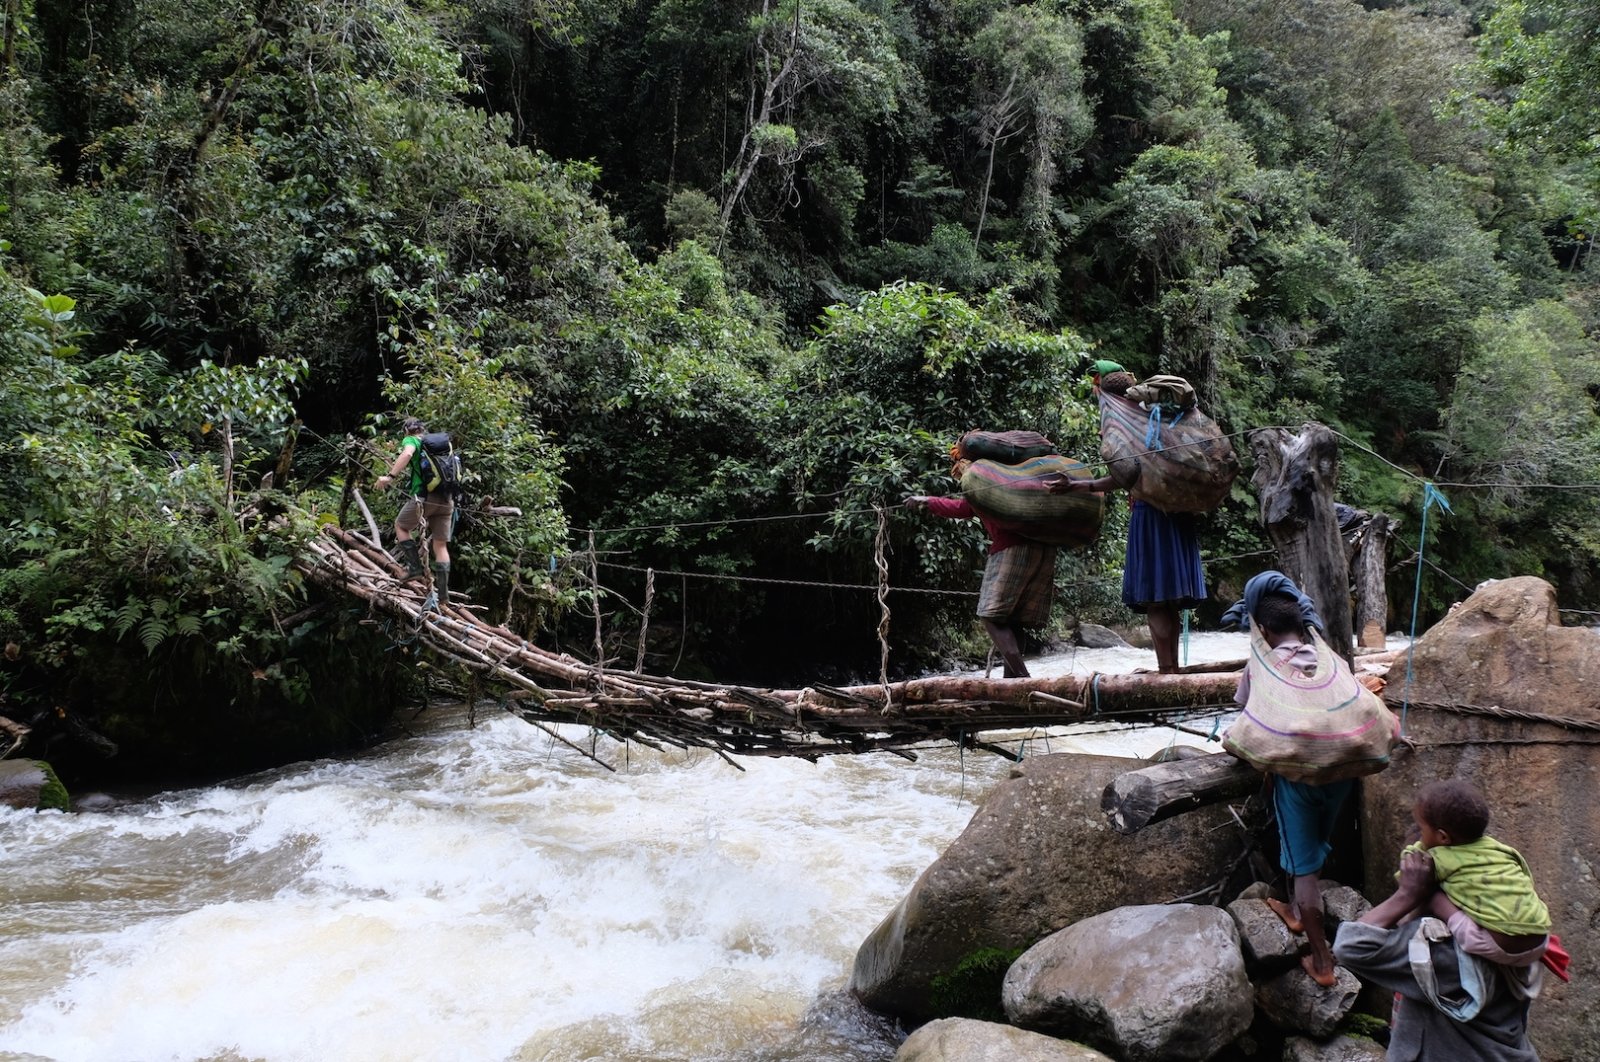 Papua Indonesia: Surga untuk berwisata dan berkembang